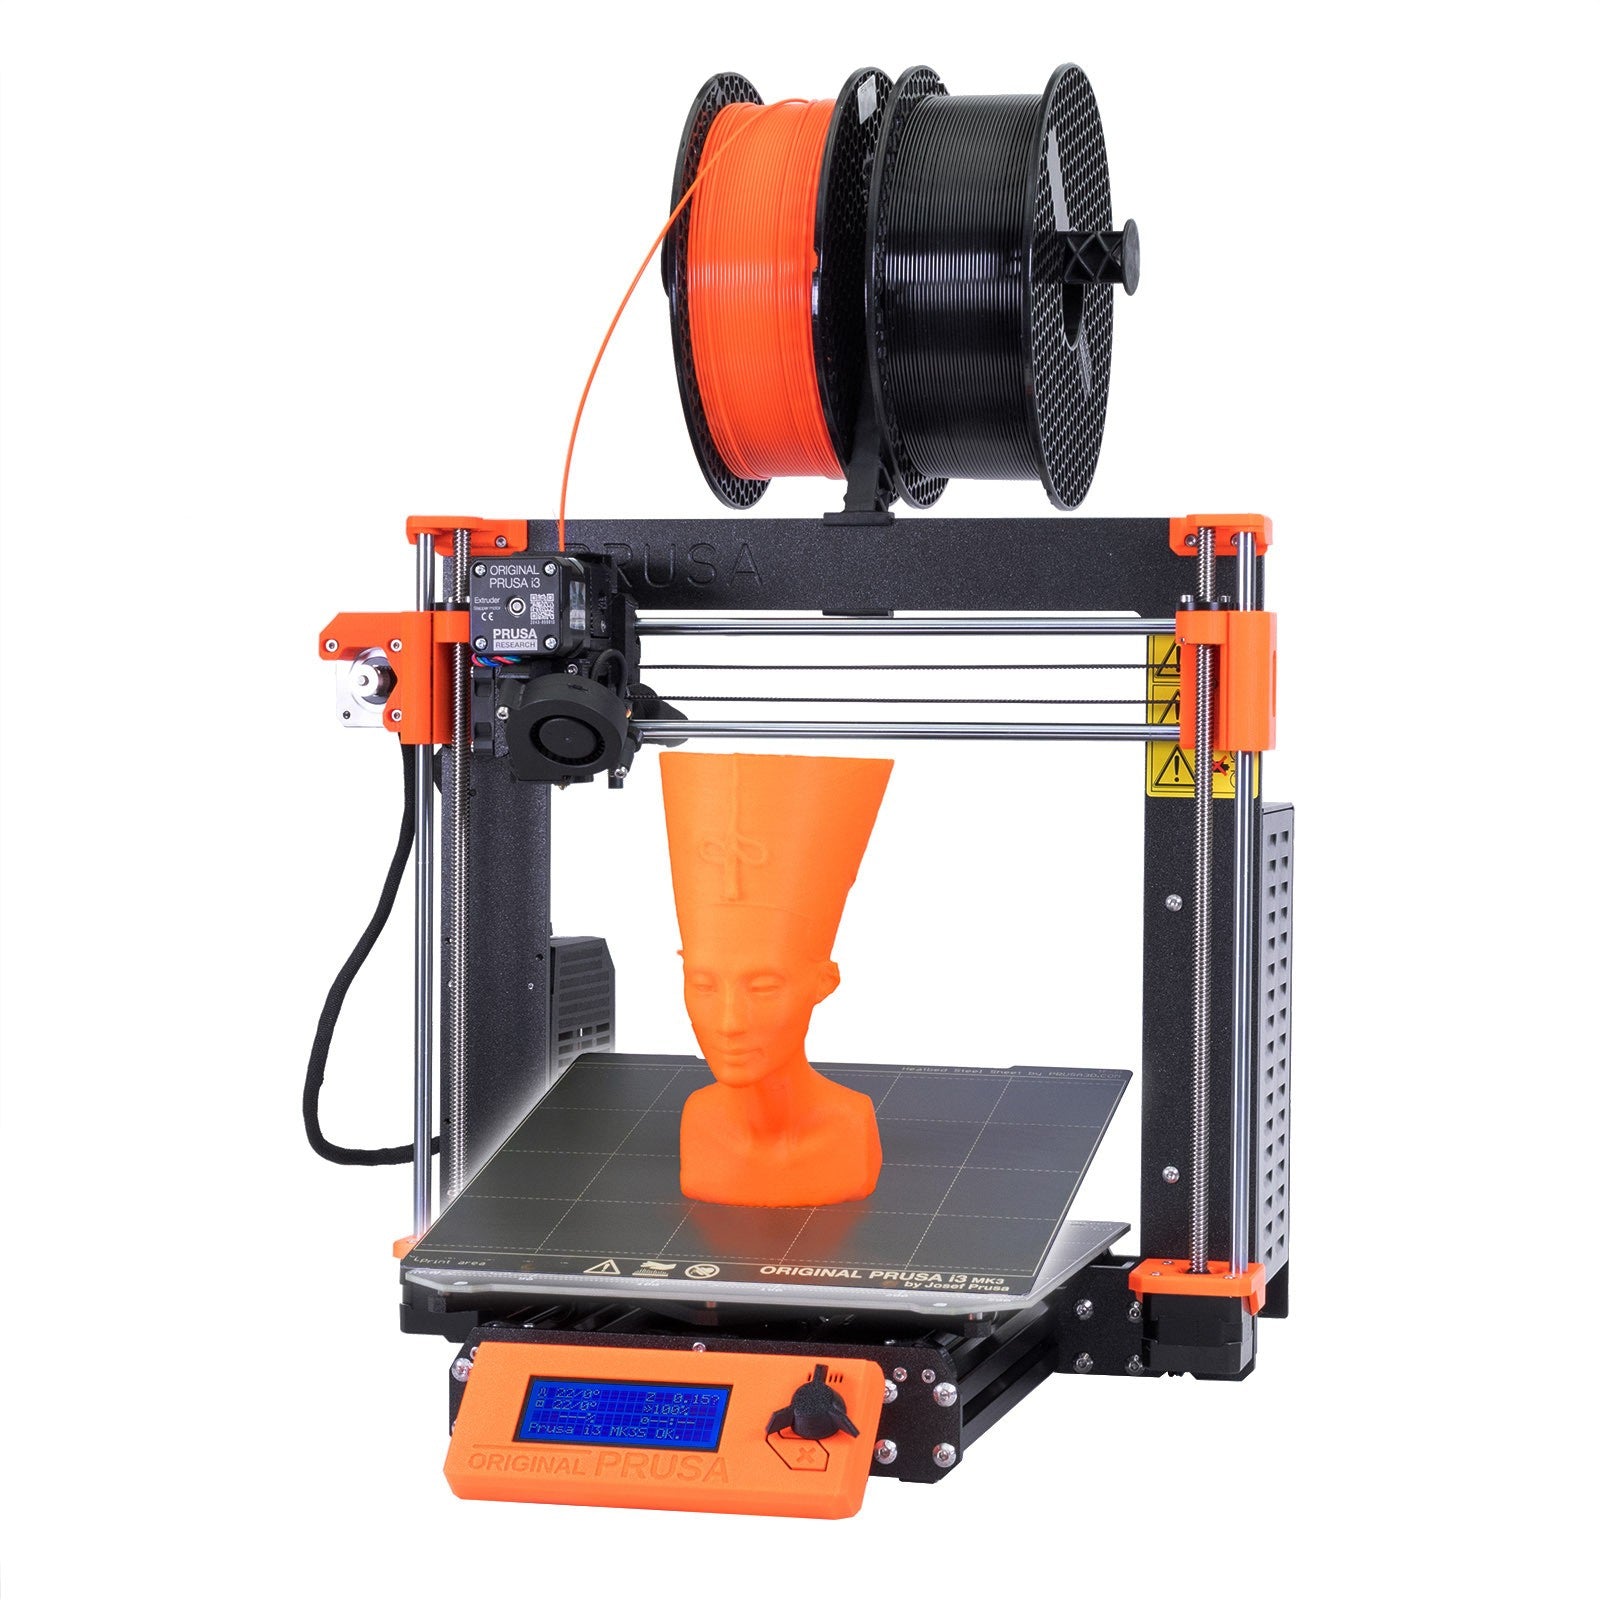 Original i3 MK3S+ 3D printer – Printed Solid